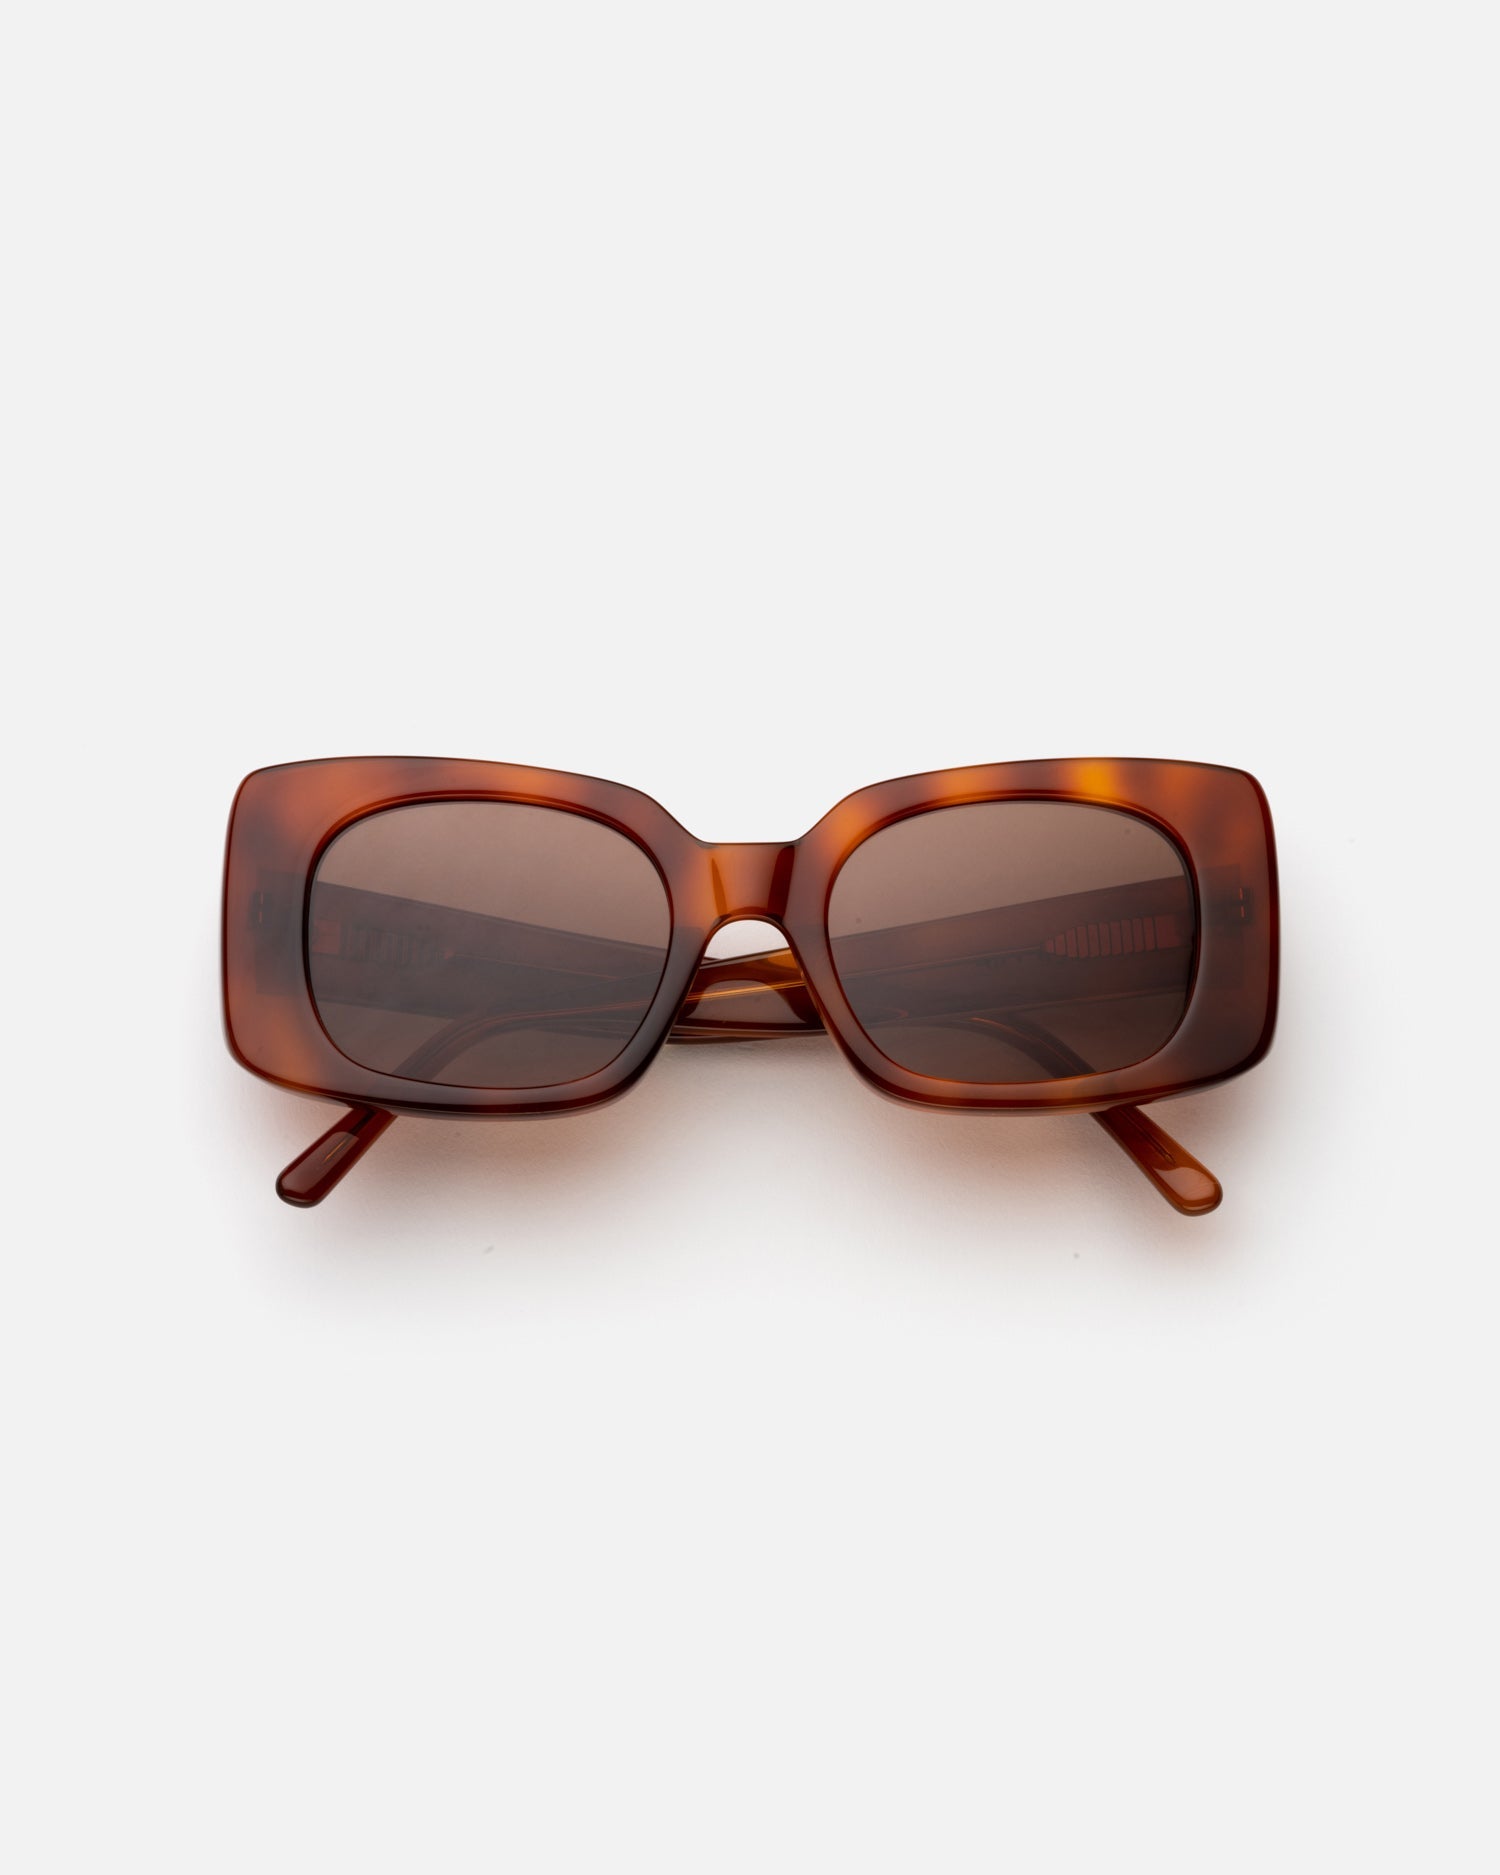 Coco Sunglasses- Chestnut